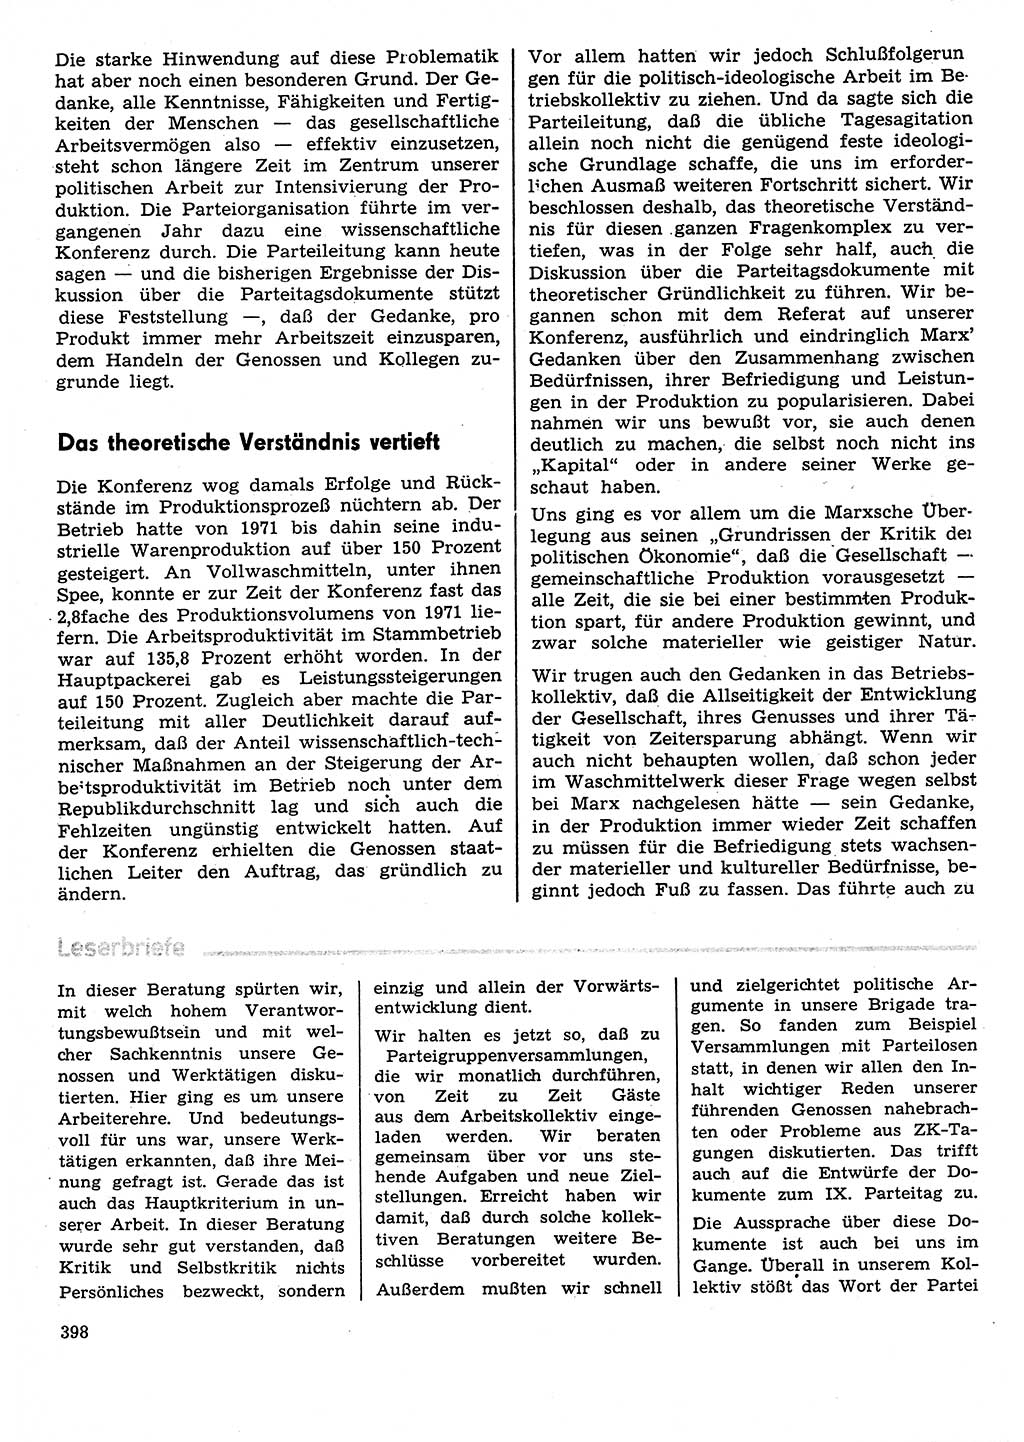 Neuer Weg (NW), Organ des Zentralkomitees (ZK) der SED (Sozialistische Einheitspartei Deutschlands) für Fragen des Parteilebens, 31. Jahrgang [Deutsche Demokratische Republik (DDR)] 1976, Seite 398 (NW ZK SED DDR 1976, S. 398)